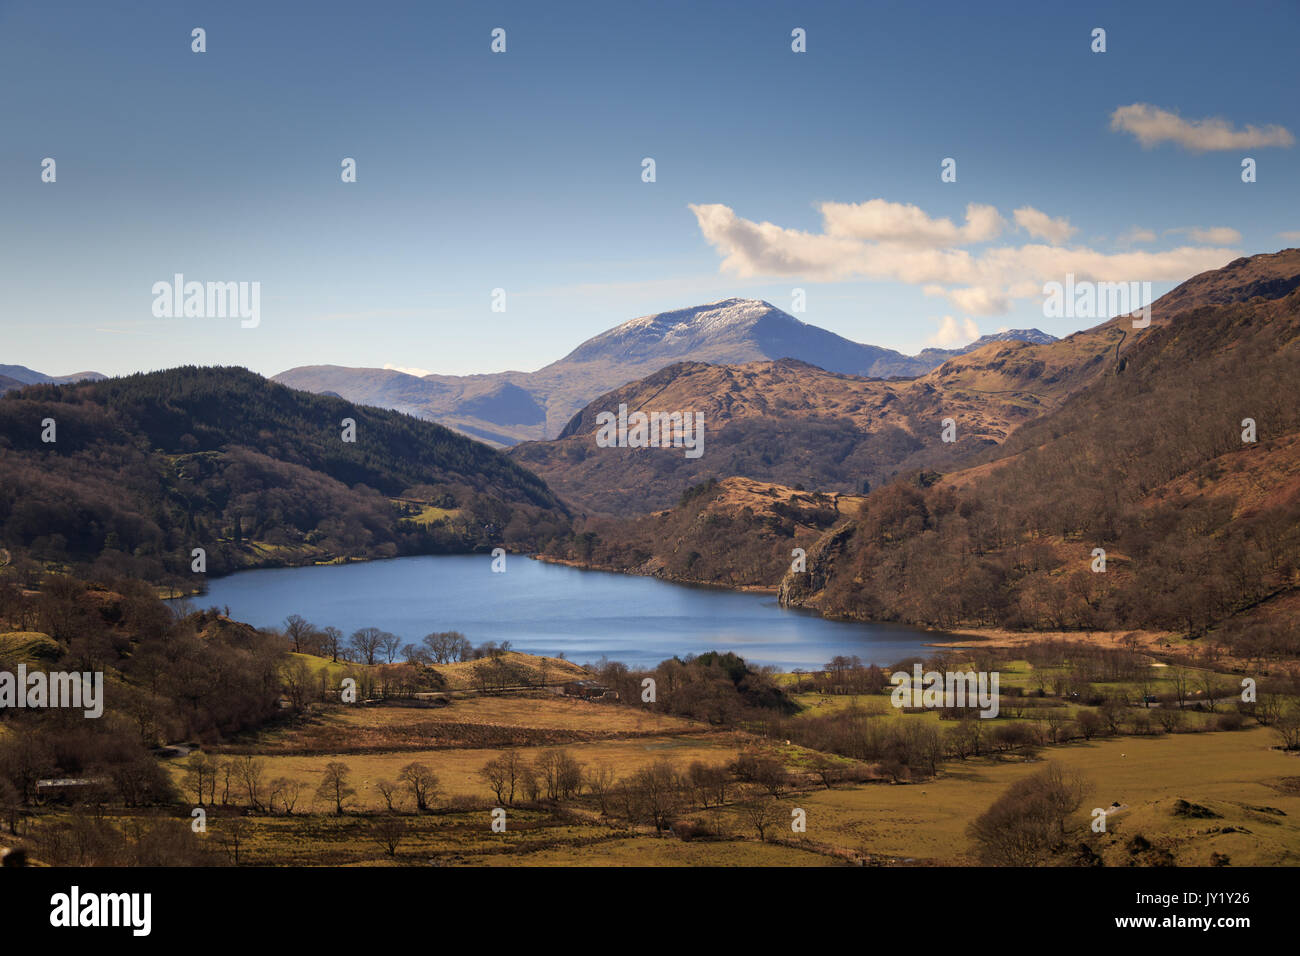 Die schöne Landschaft des Snowdonia National Park, Wales. Stockfoto